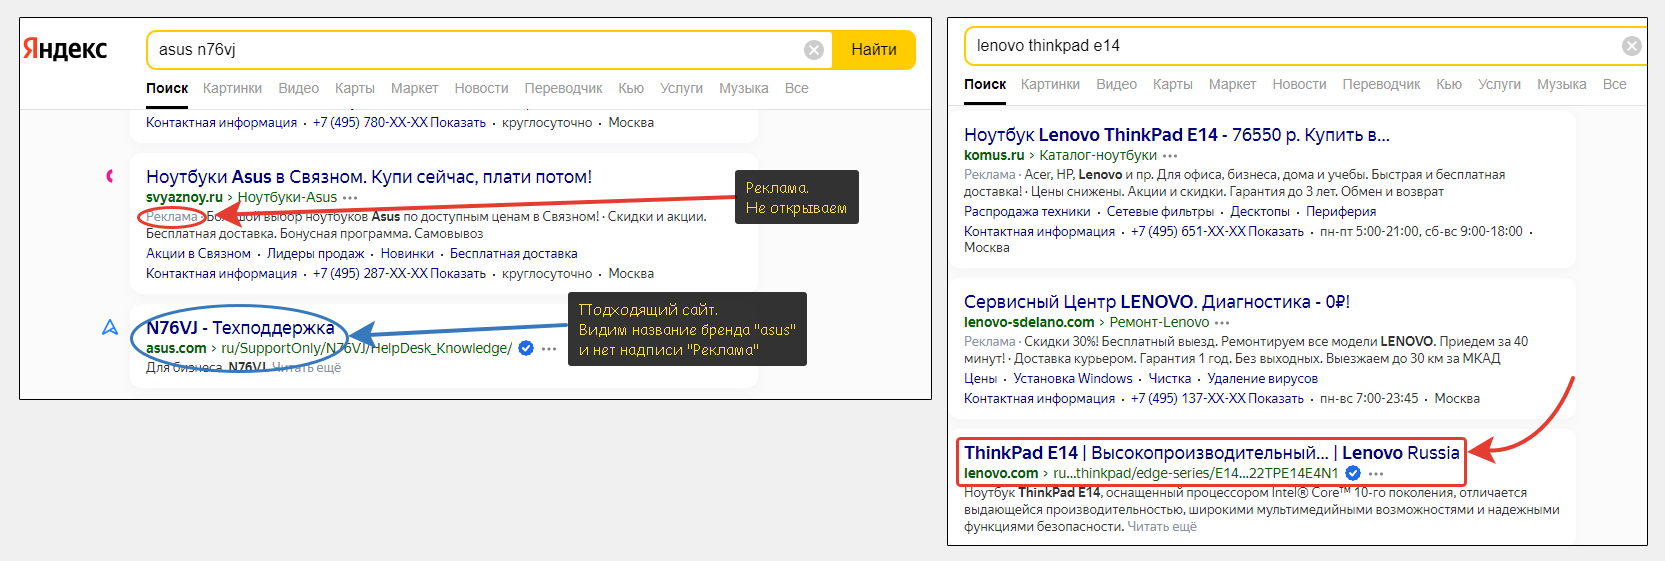 2 примера поиска официального сайта ноутбука через поисковую систему Яндекс для загрузки драйверов.